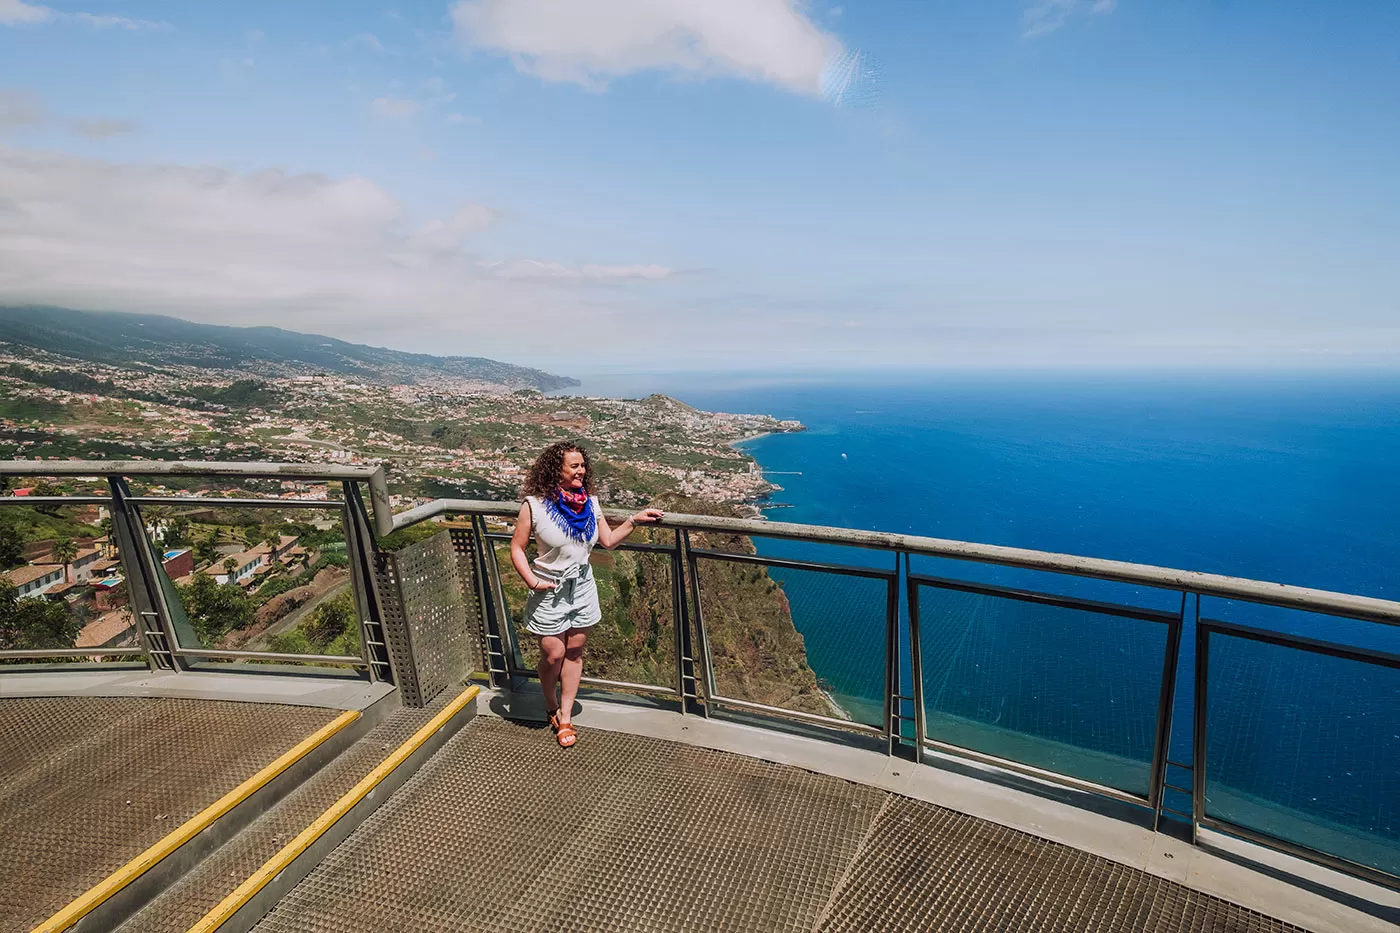 Things to do in Madeira - Cabo Girão Skywalk, Miradouro do Cabo Girão